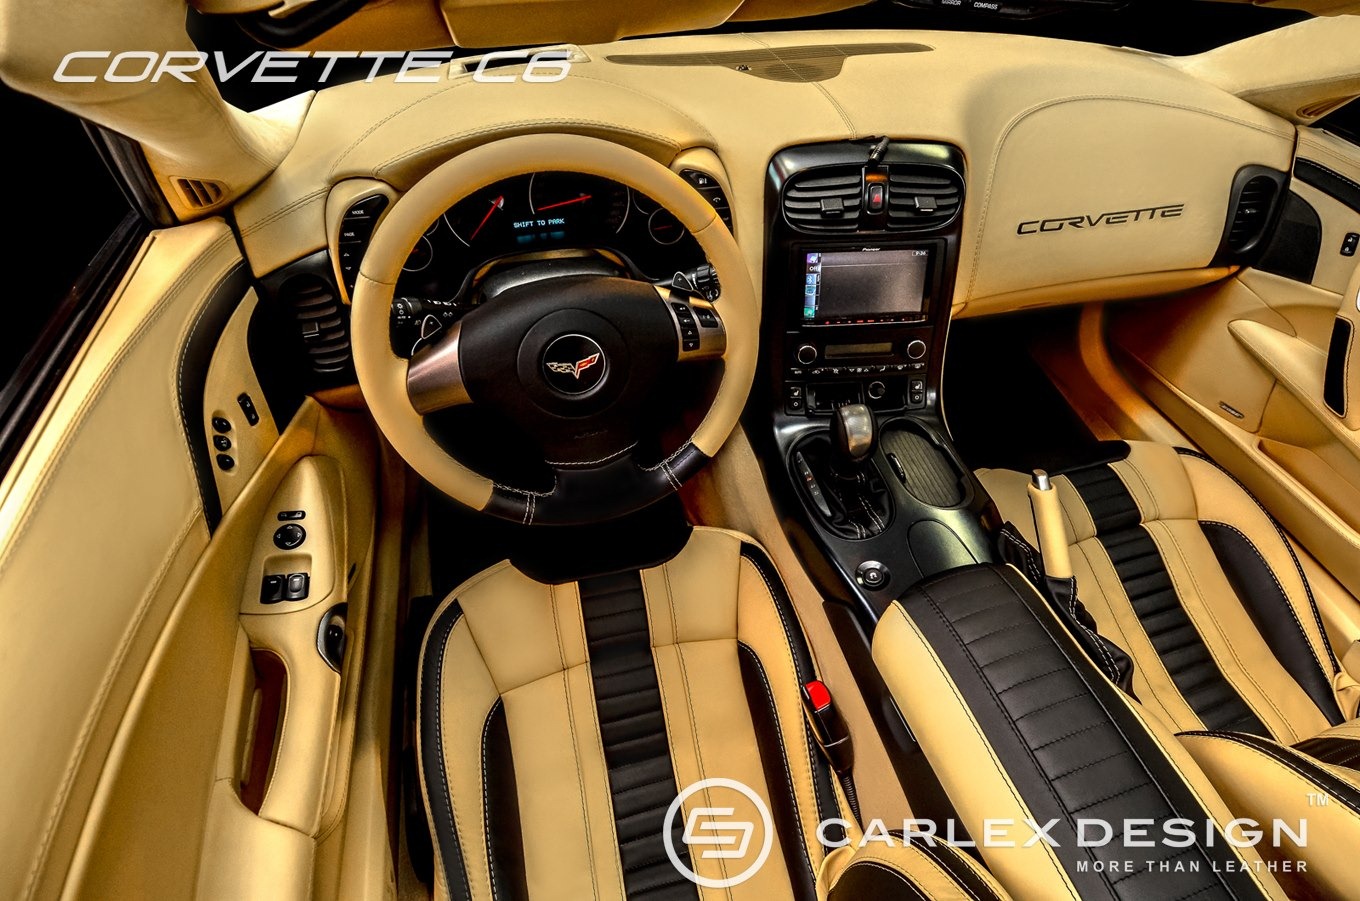 carlex-design-corvette-c6-4